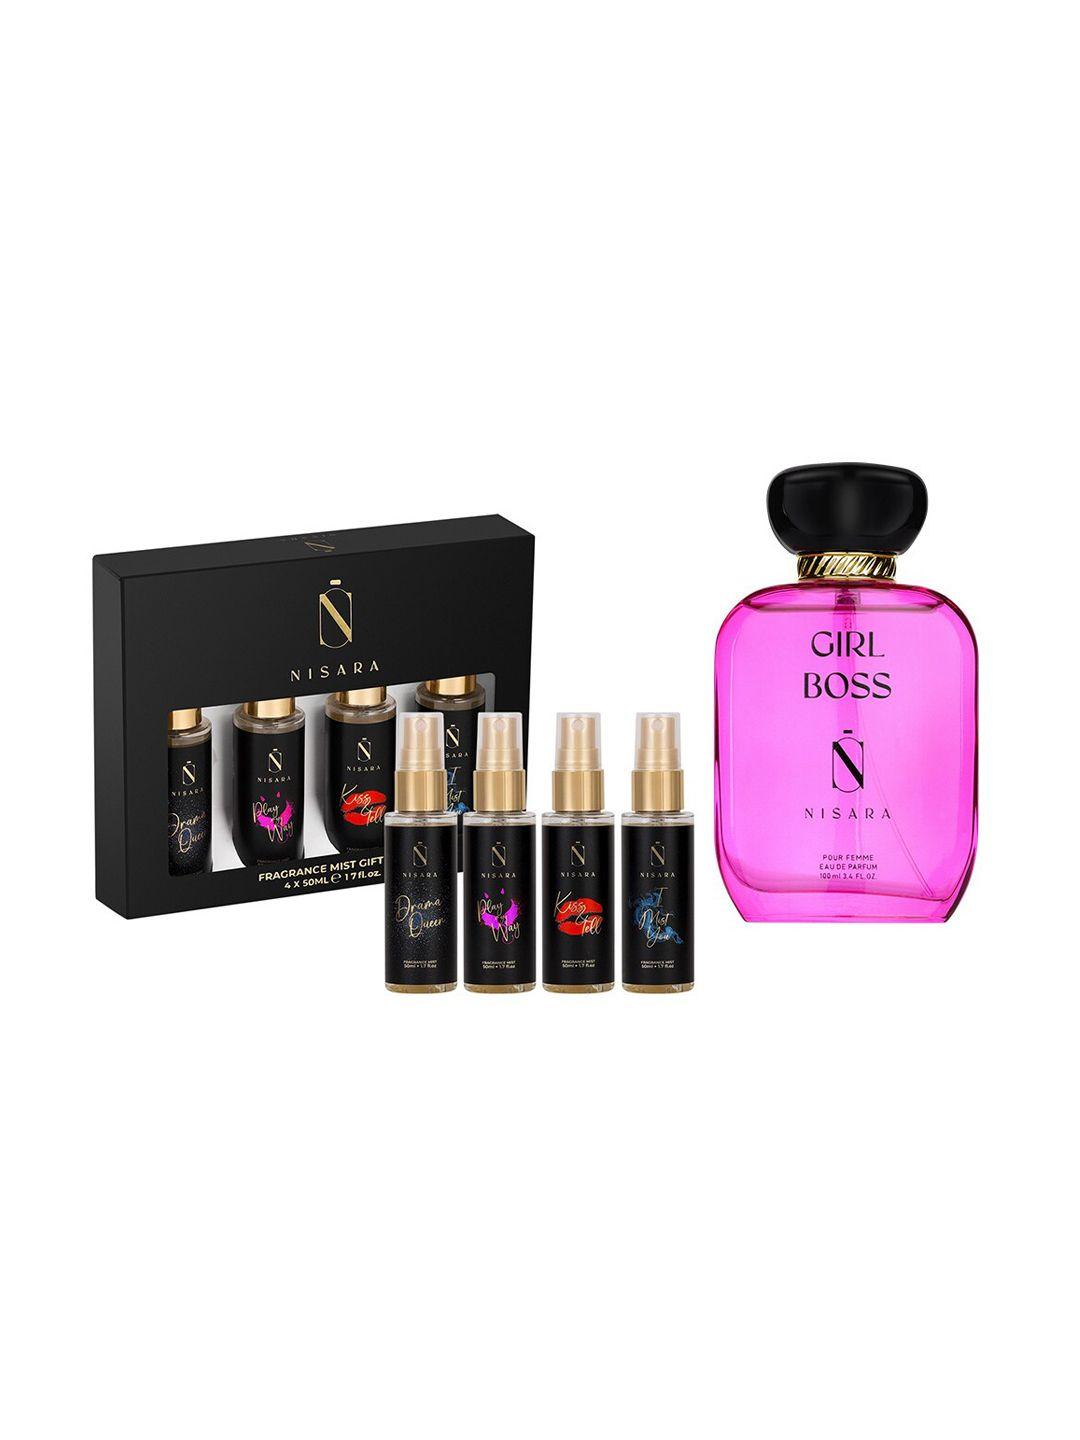 nisara girl boss perfume & fragrance body mist gift set